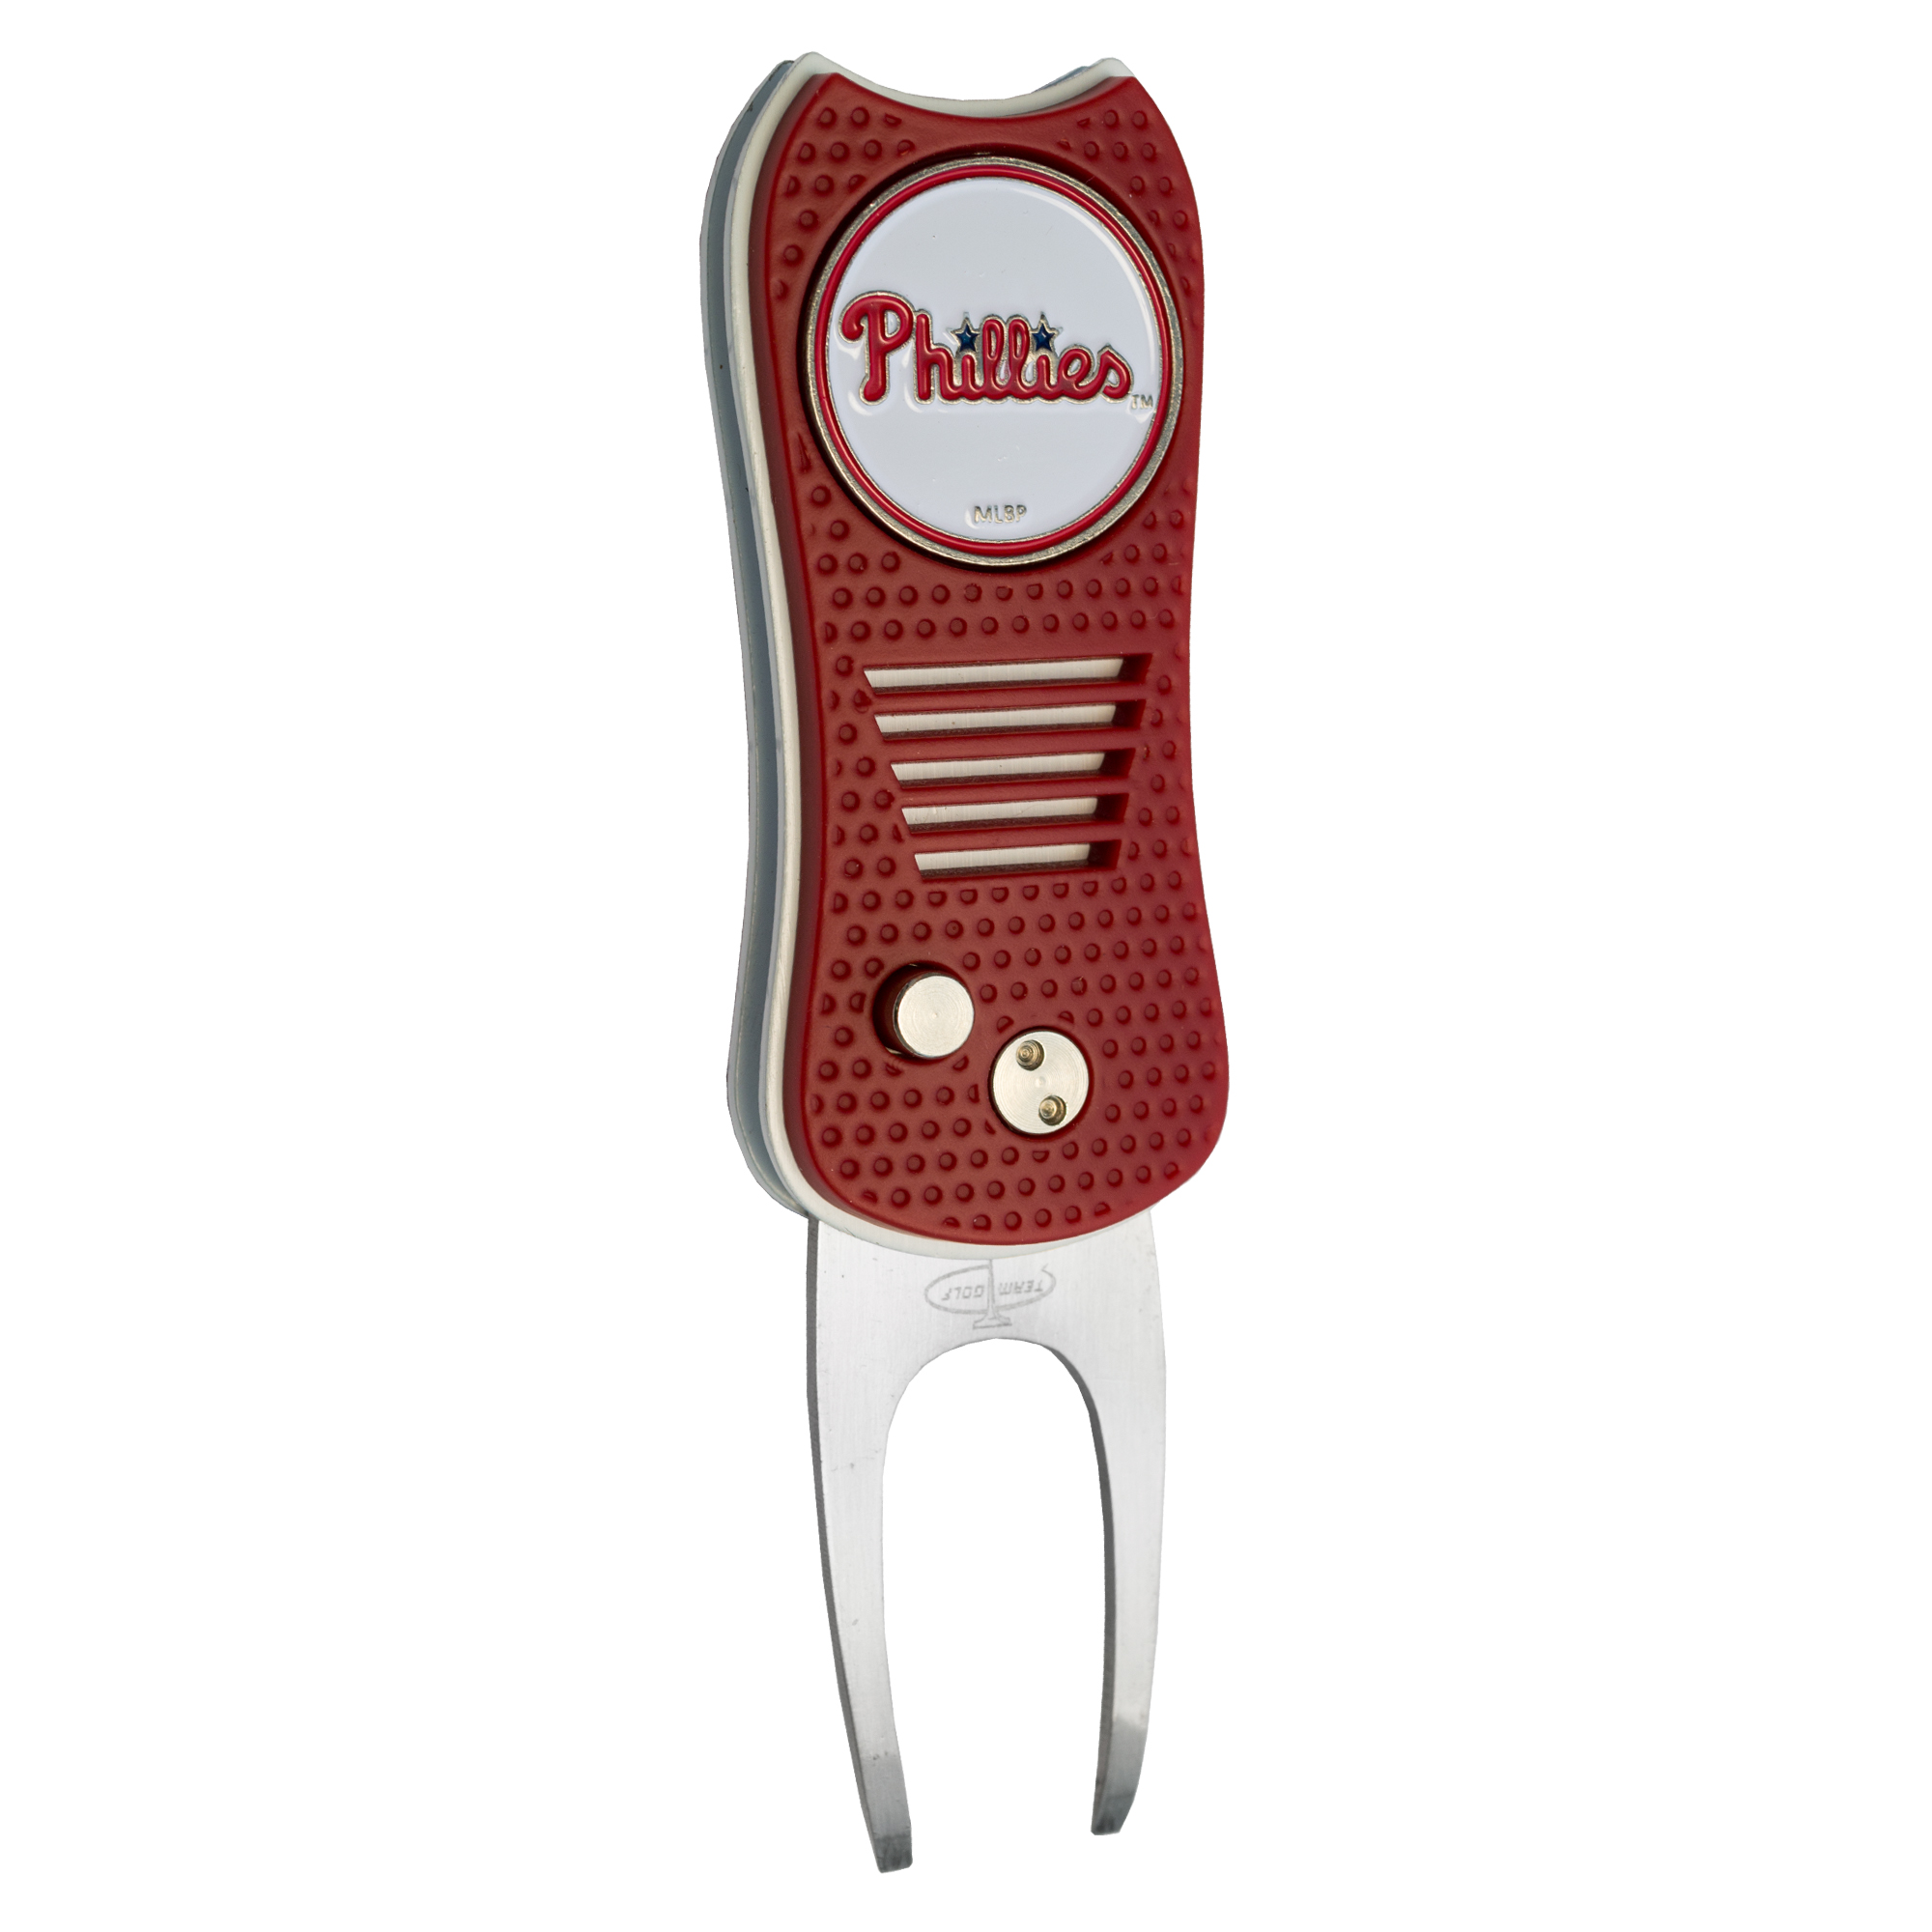 Philadelphia Phillies Switchfix Divot Tool